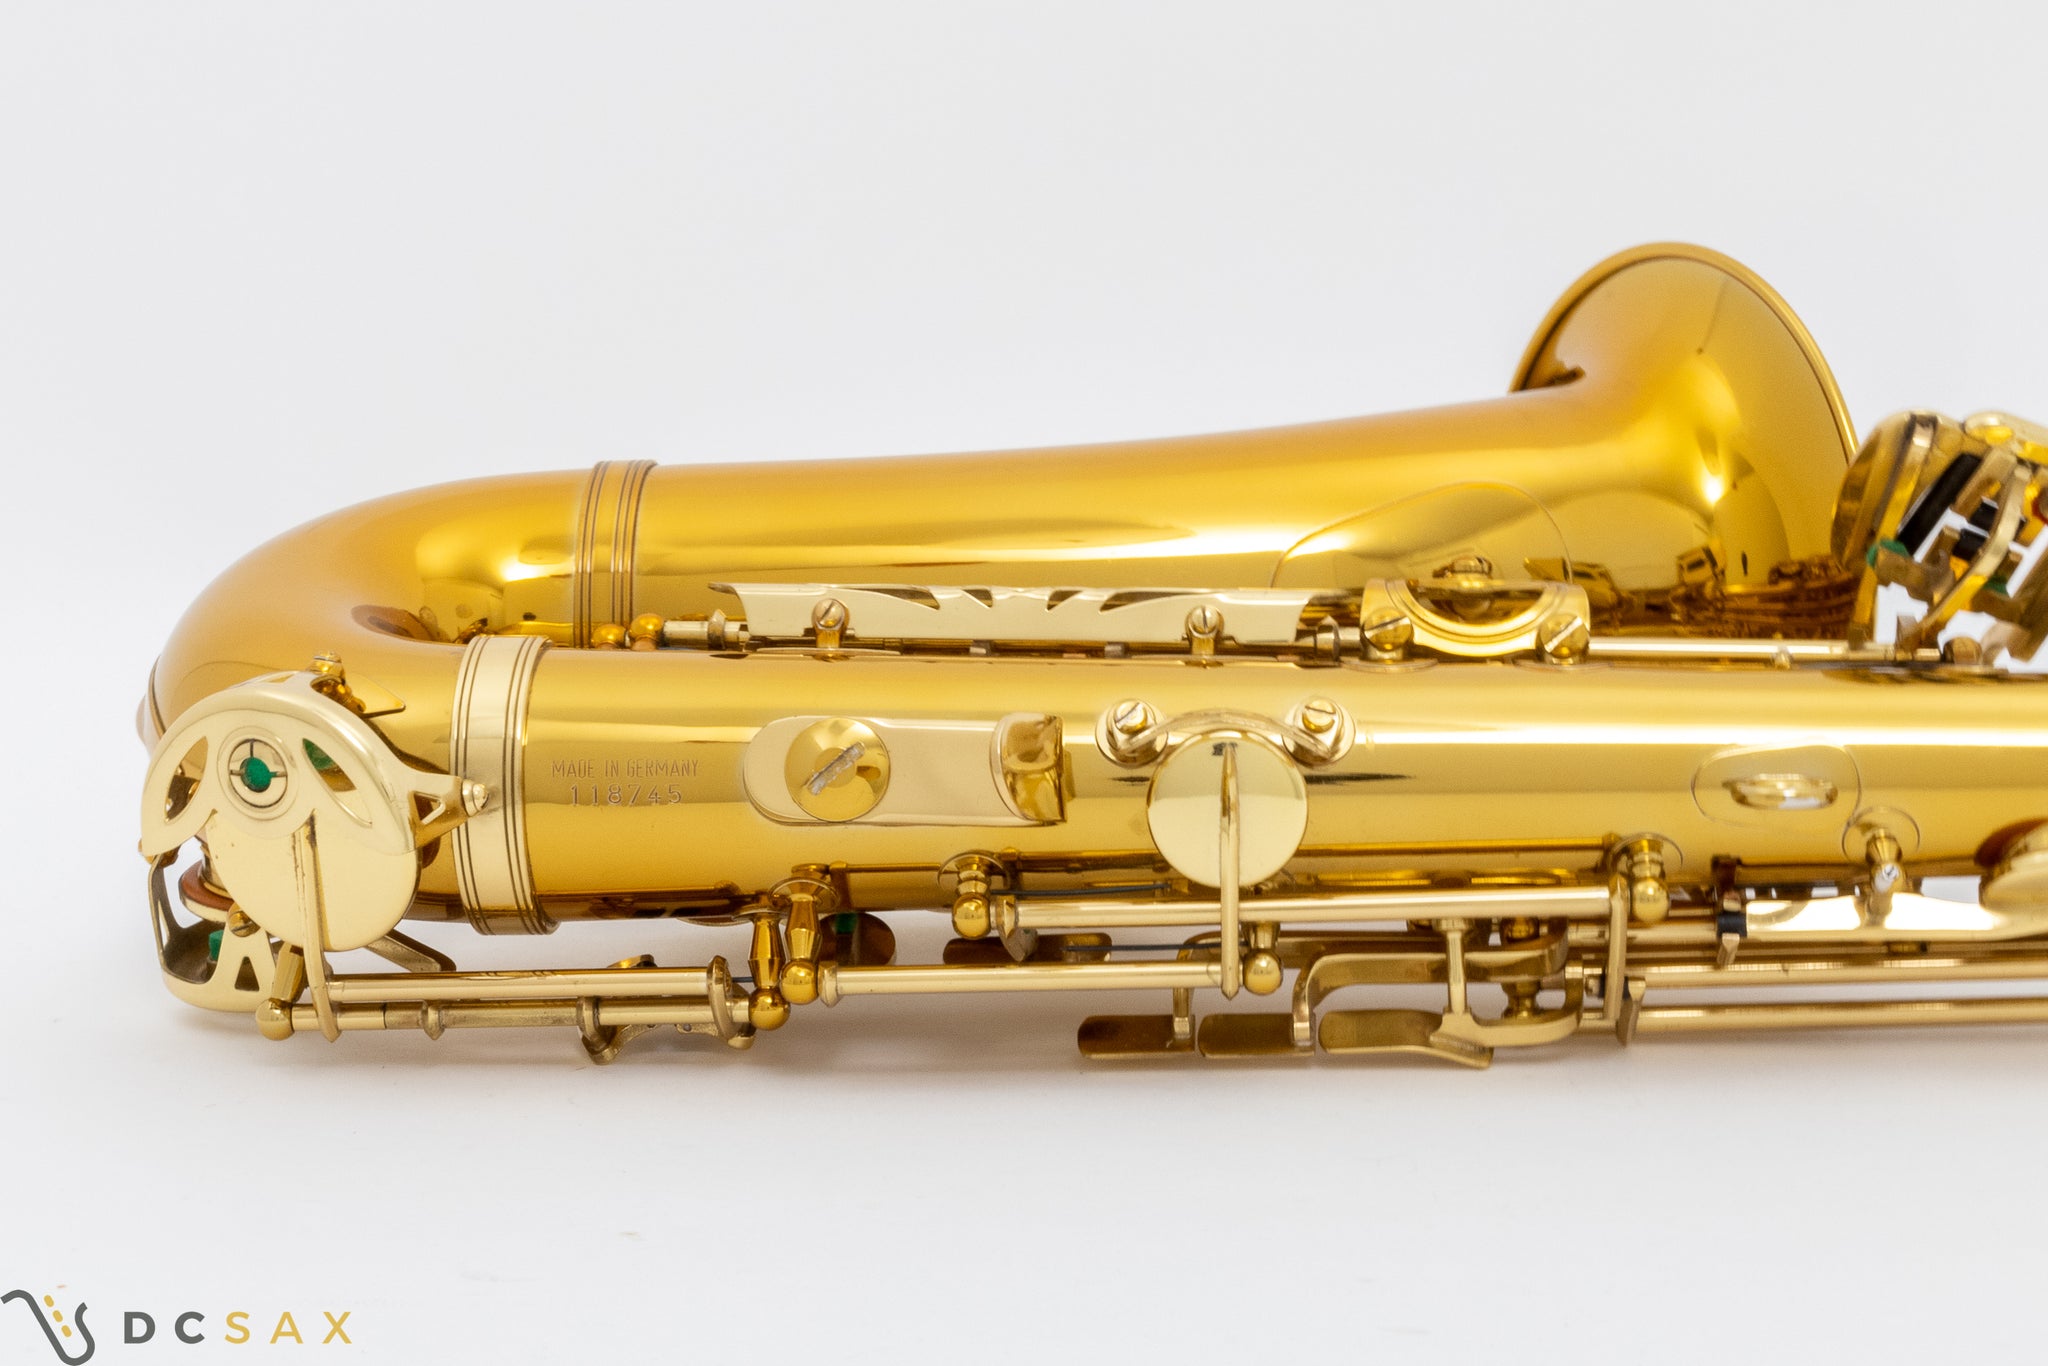 Keilwerth SX90R Alto Saxophone, Video, Near Mint